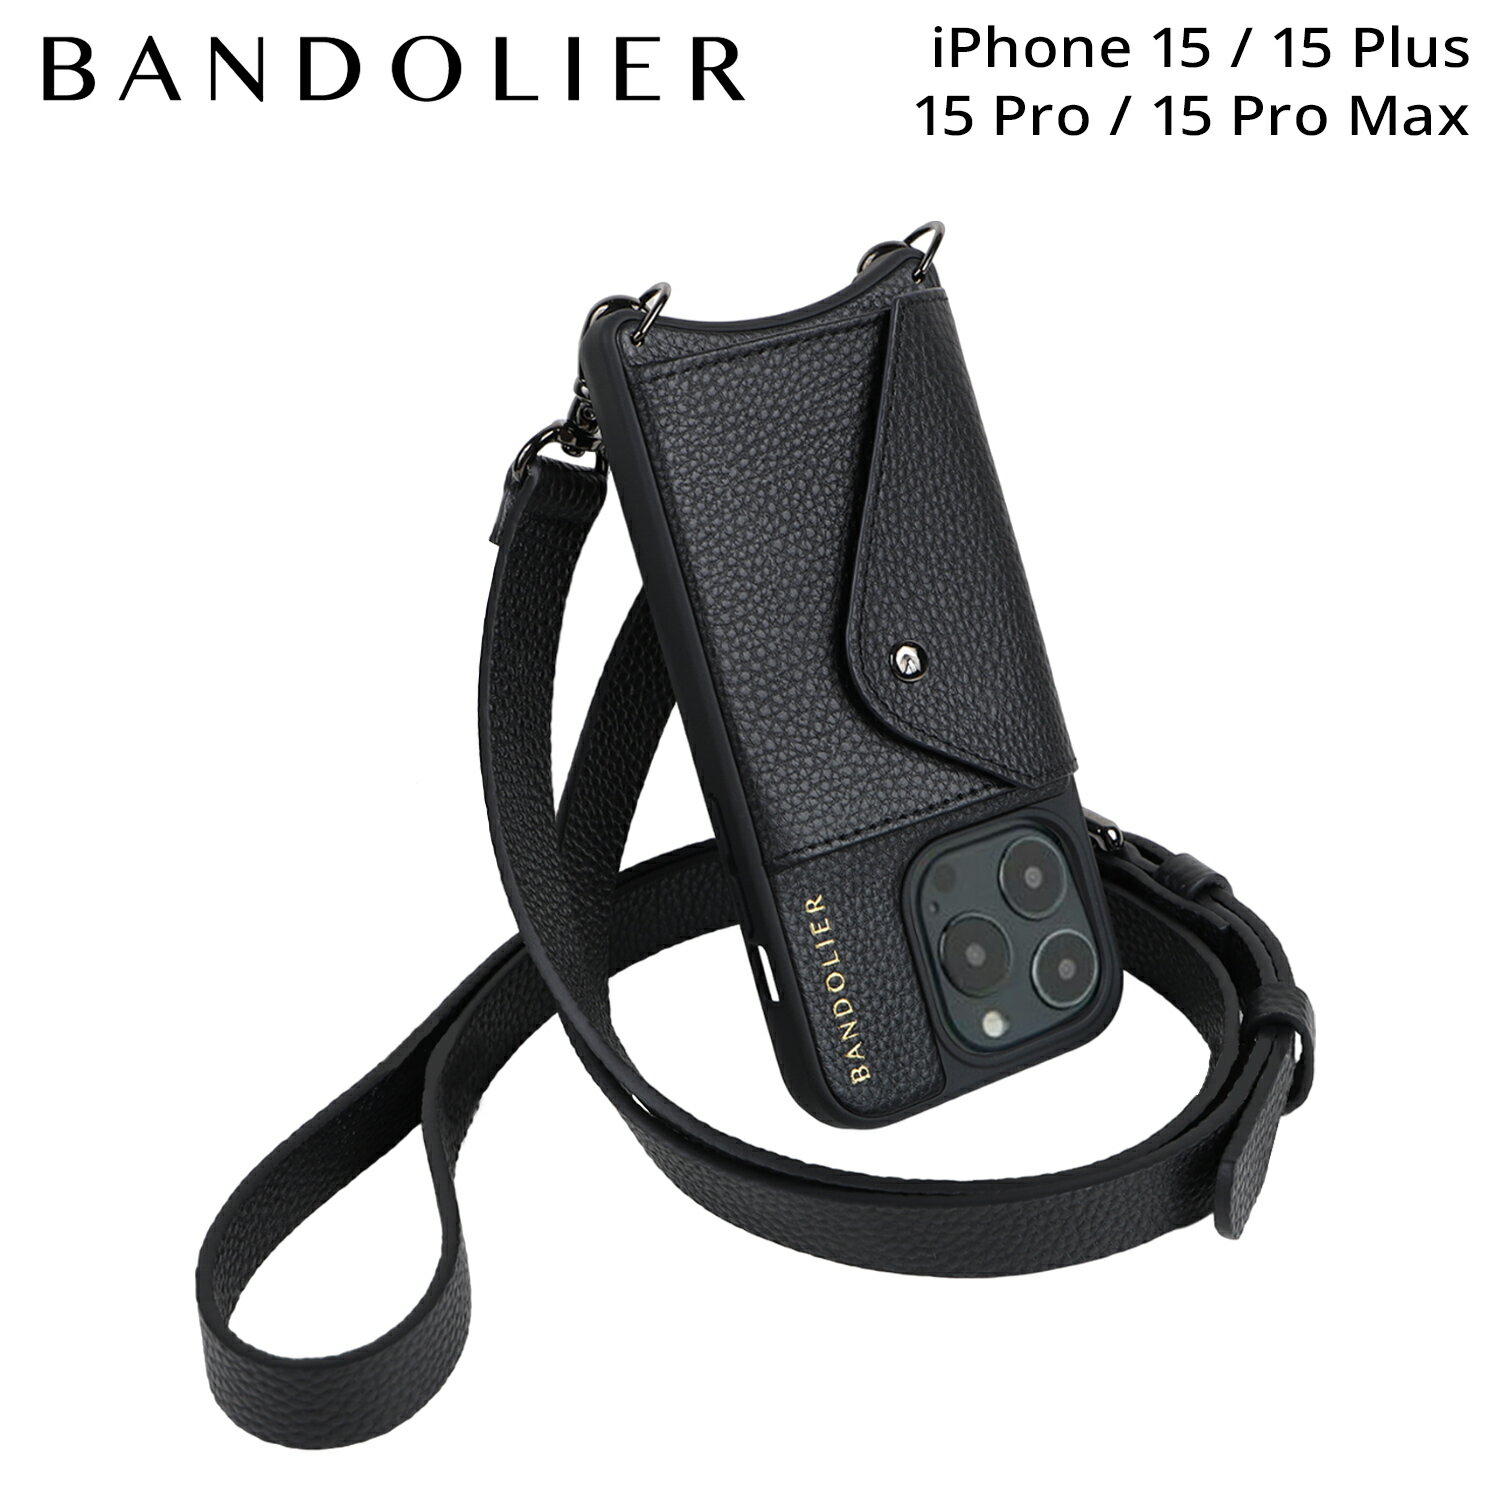 BANDOLIER バンドリヤー iPhone15 15Pro iPhone 15 Pro Max iPhone 15 Plus スマホケース スマホショルダー 携帯 アイフォン メンズ レディース HAILEY SIDE SLOT PEWTER ブラック 黒 14HAI